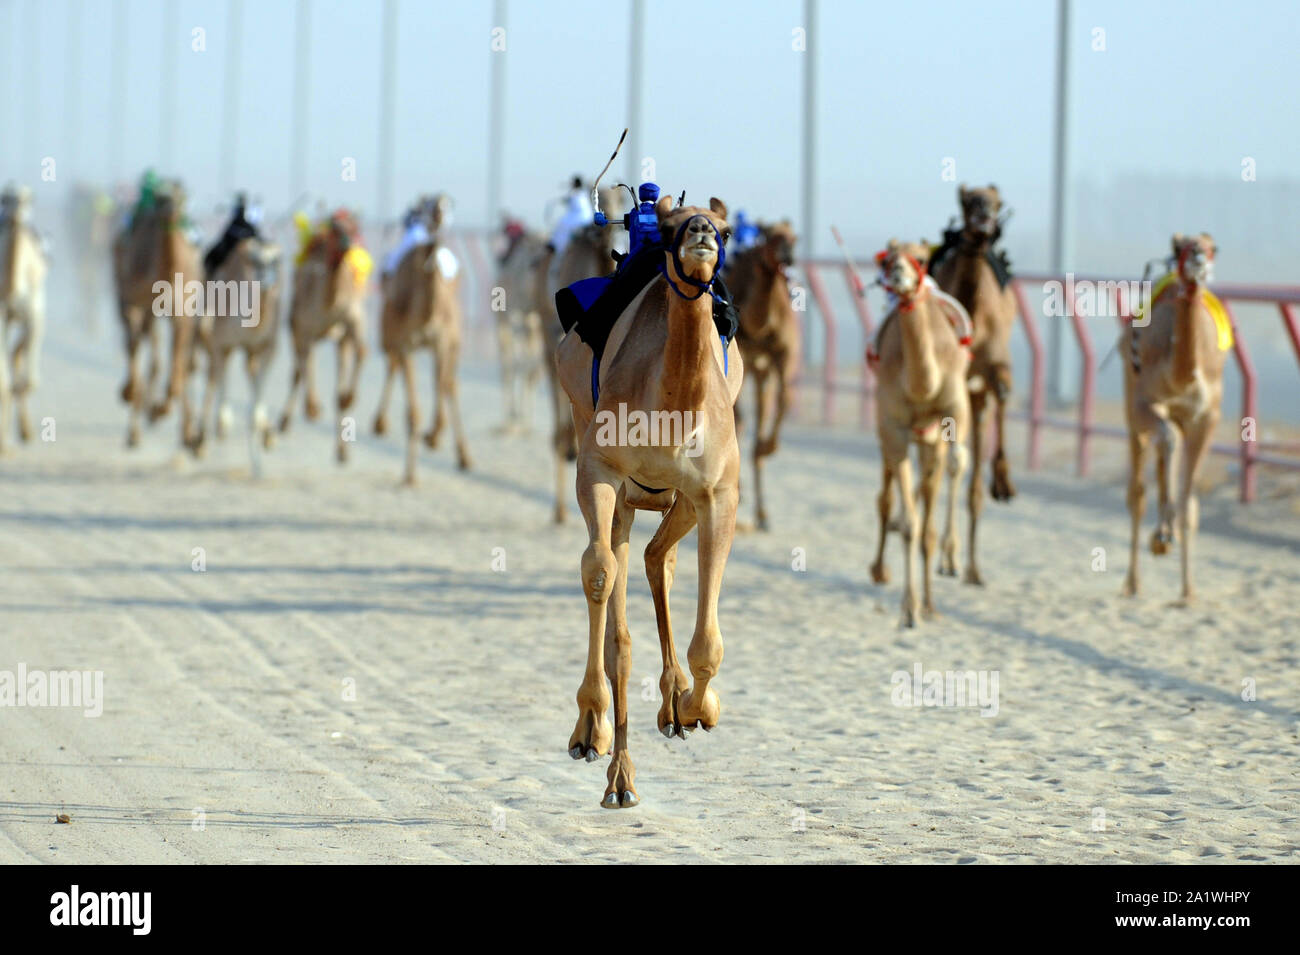 Al Ahmadi, le Koweït. 28 Sep, 2019. Les chameaux en concurrence dans une course avec robot jockeys sur leur dos dans le gouvernorat d'Al Ahmadi, le Koweït, le 22 sept., 201928. Course de chameaux amour koweïtiens, qui est un événement sportif très populaire au Koweït. Credit : Ghazy Qaffaf/Xinhua/Alamy Live News Banque D'Images